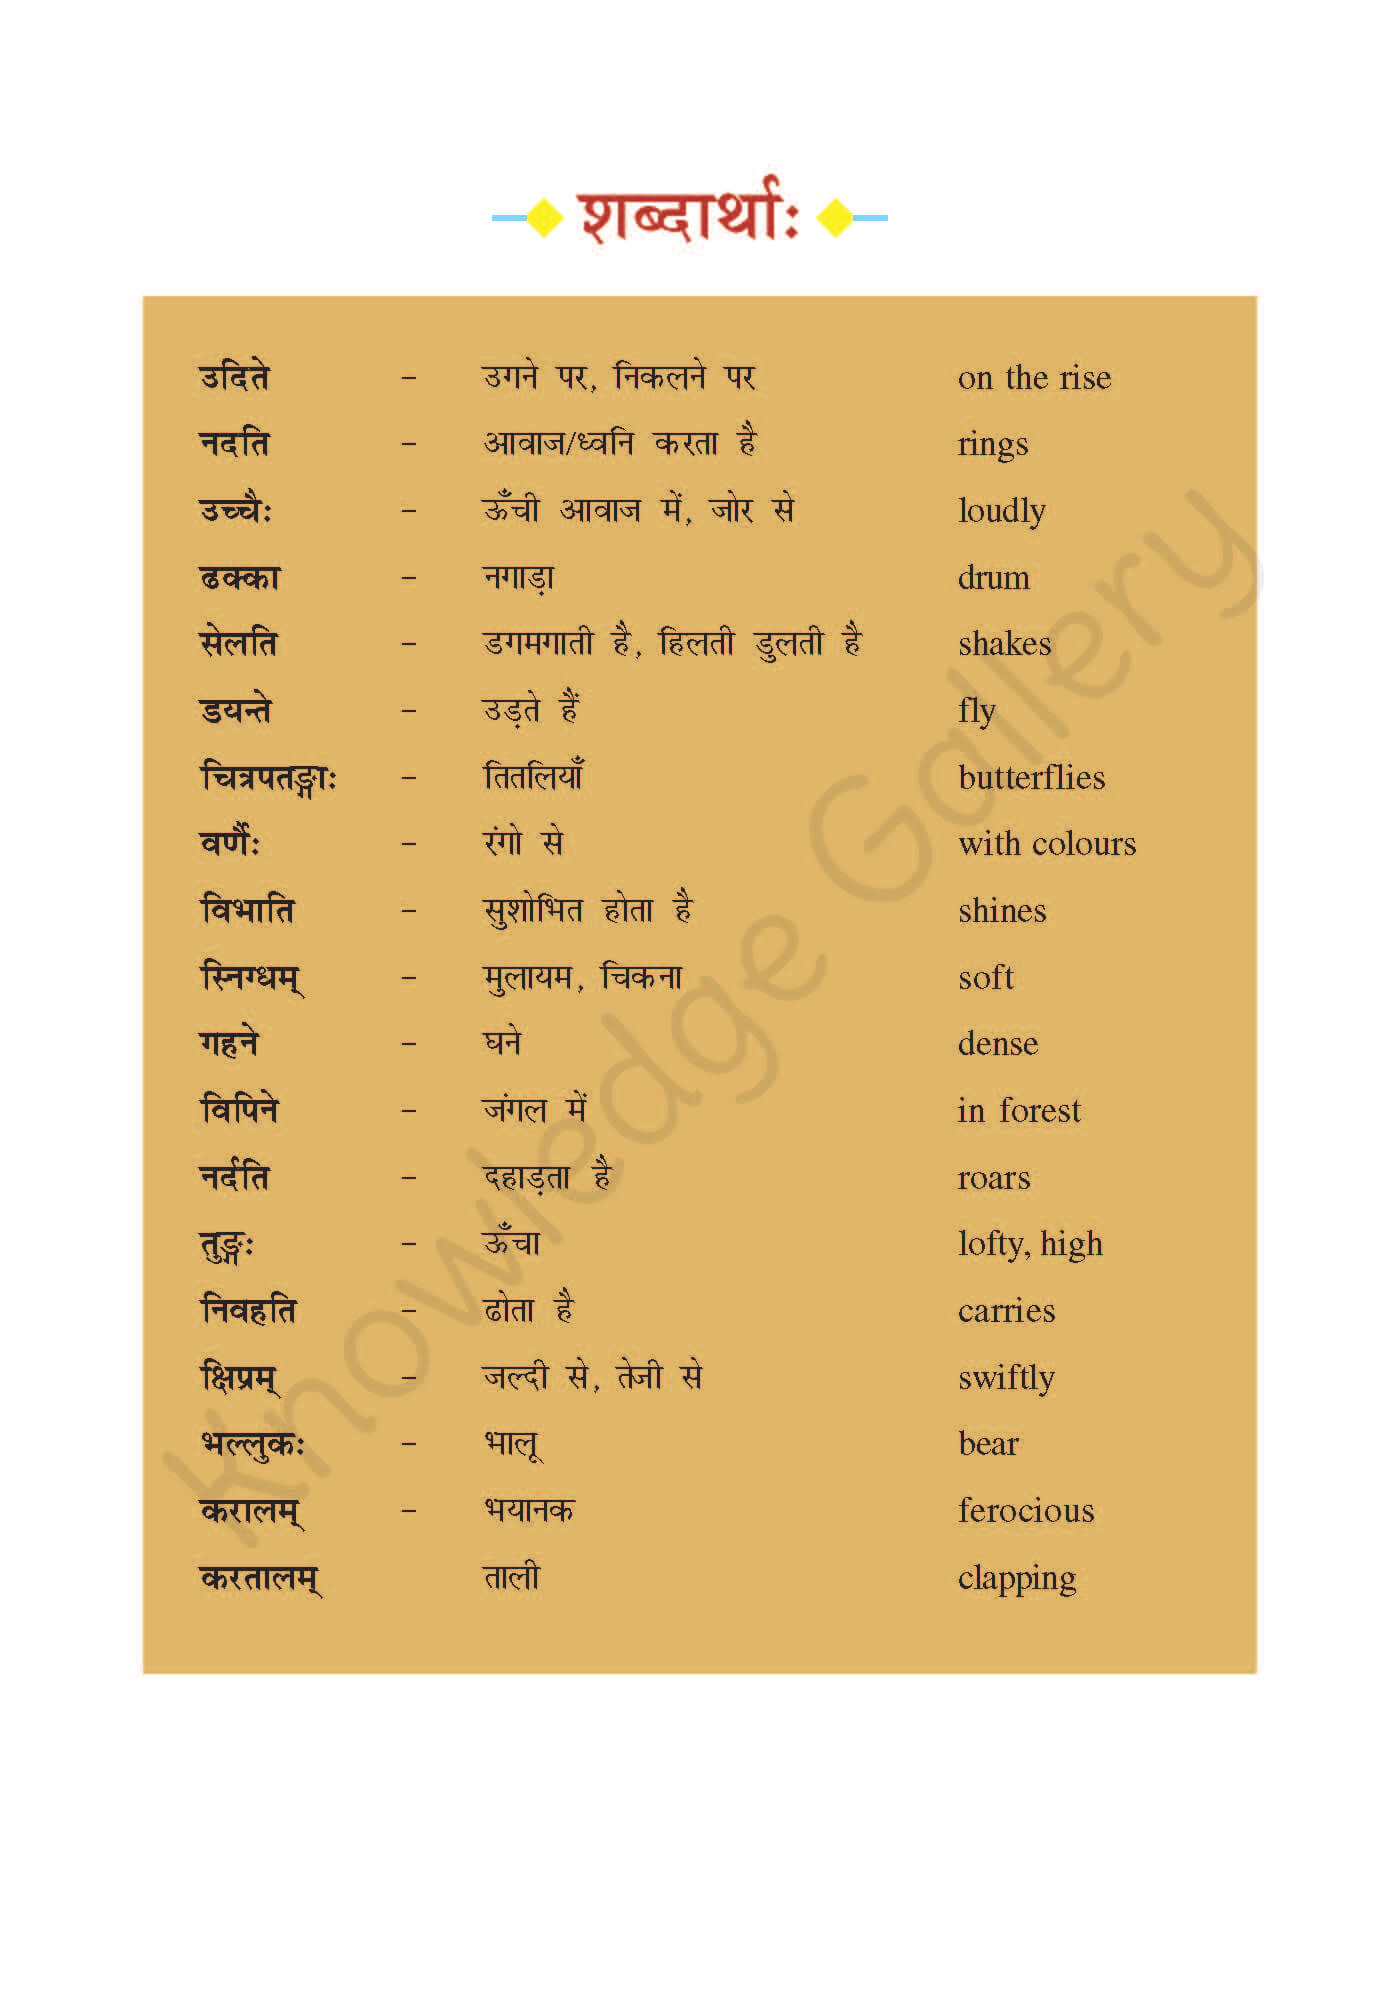 NCERT Solution For Class 7 Sanskrit Chapter 13 part 3